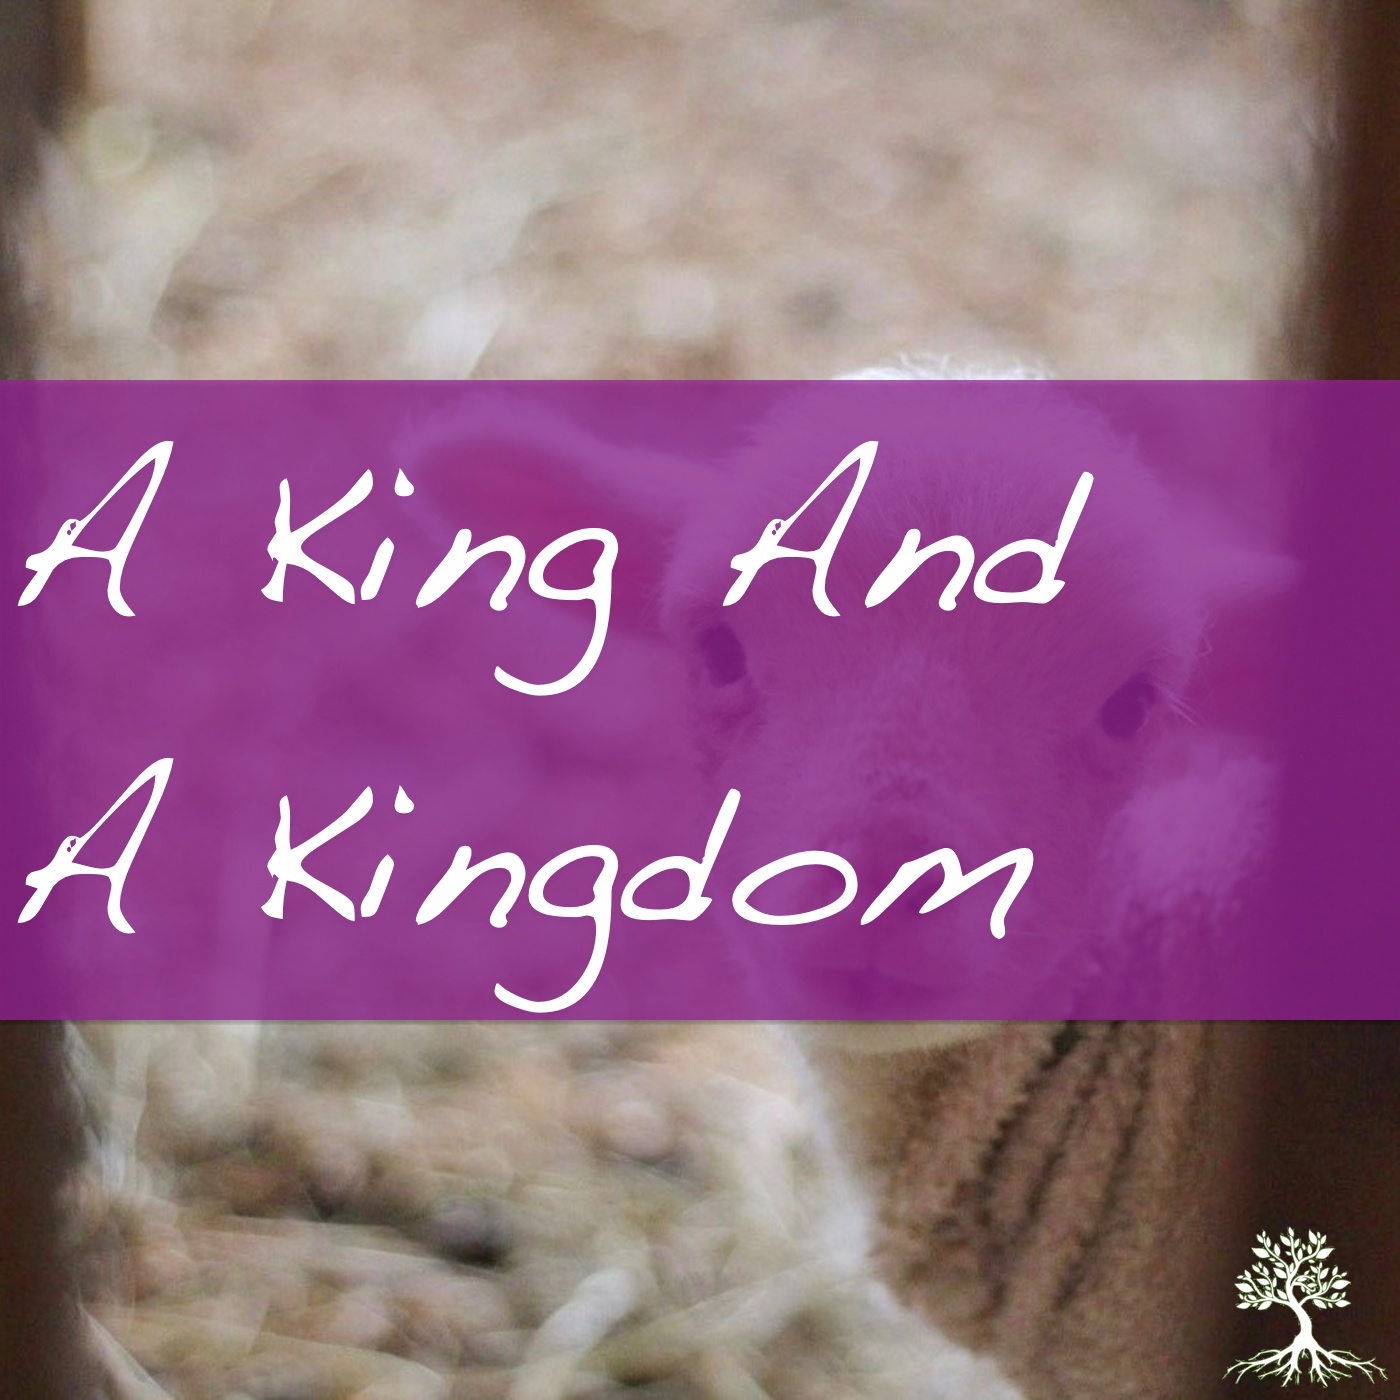 A King And A Kingdom (Natalia Terfa 11/26/17)